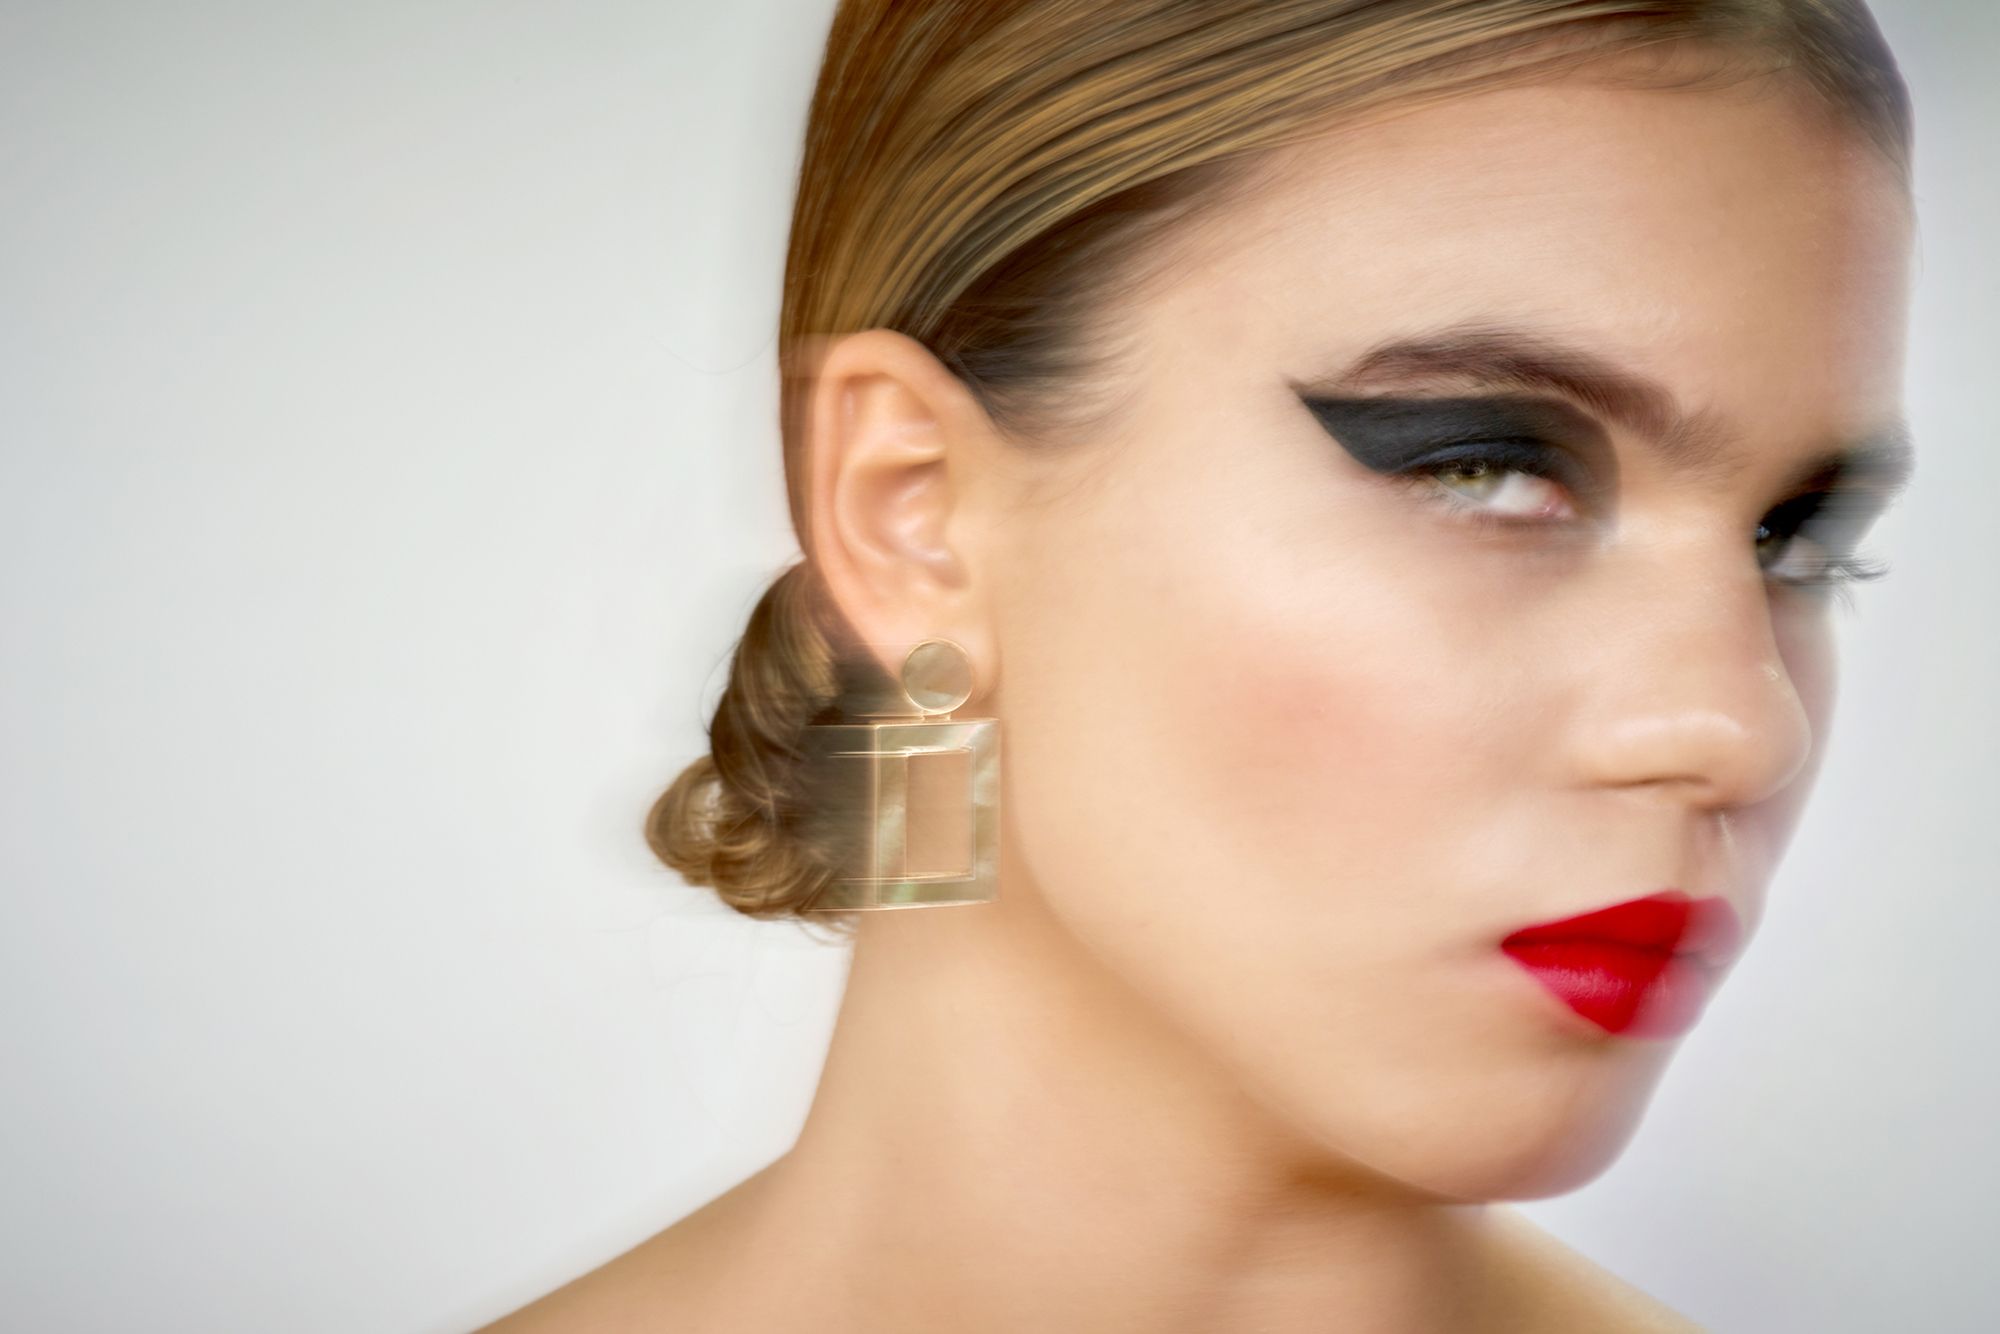 Kleopatra Stellung - Abbildung einer Frau mit stark geschminkten Augen und rotem Lippenstift